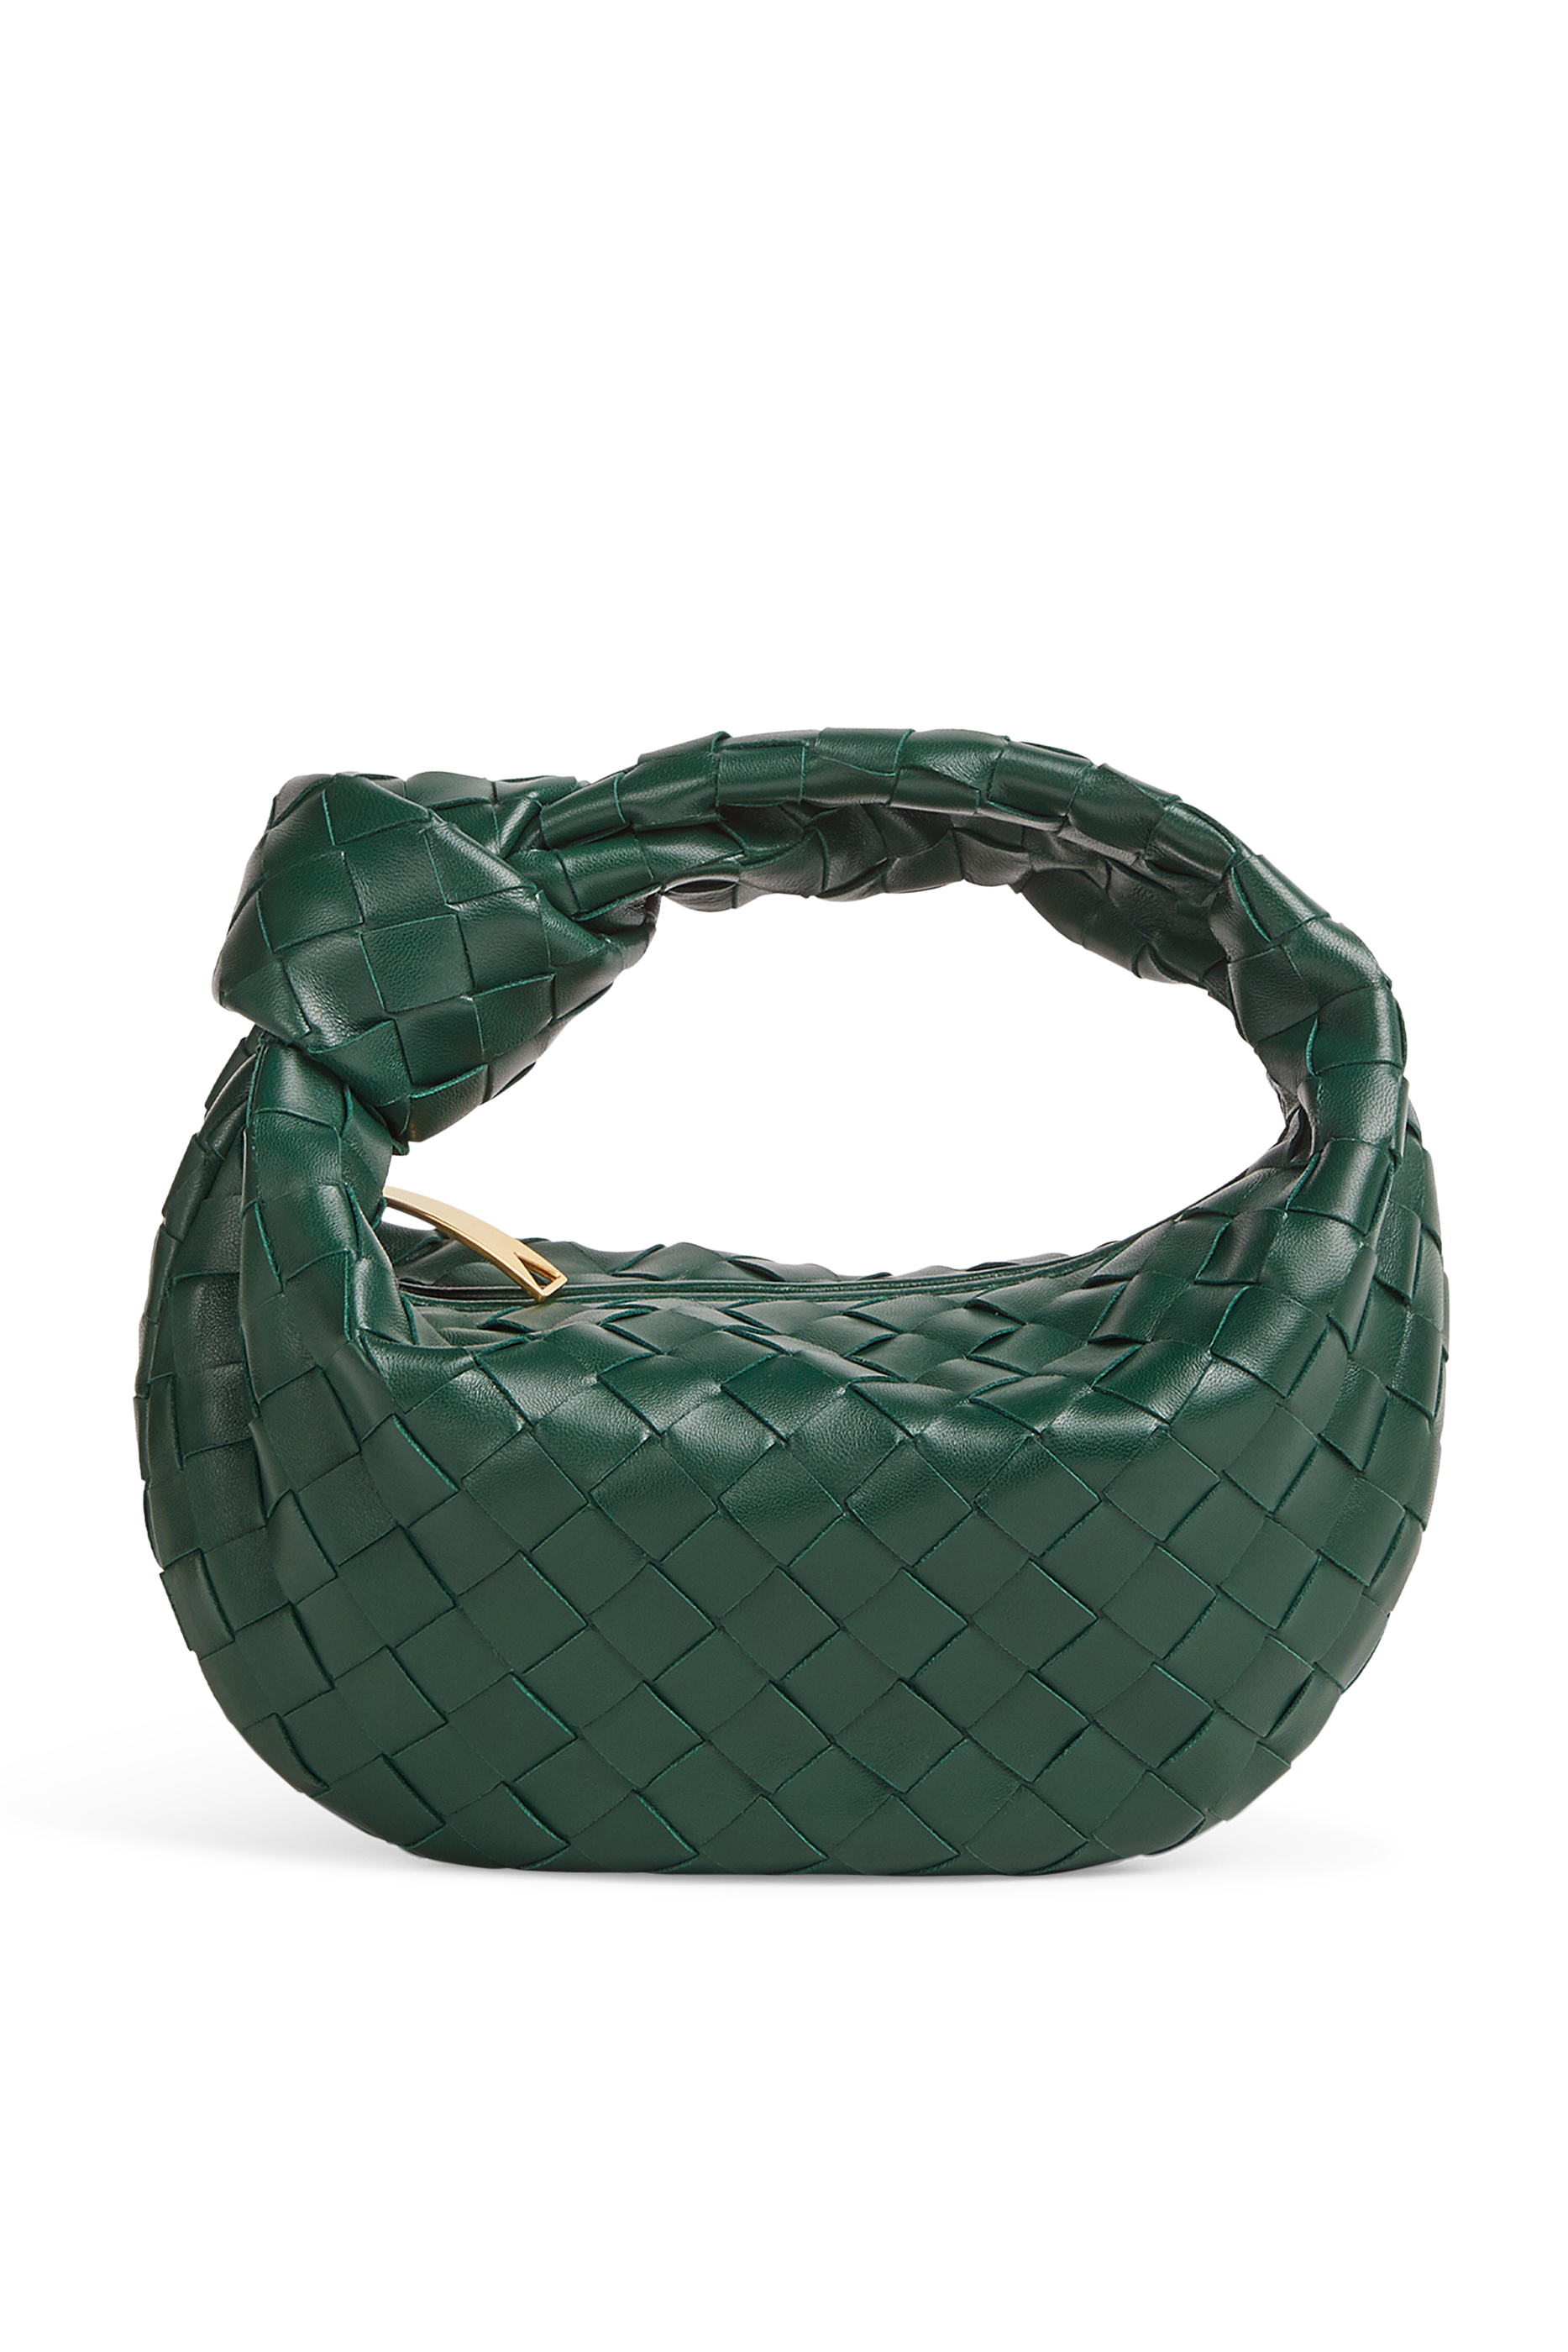 Buy Bottega Veneta Mini Jodie Bag for Womens | Bloomingdale's Kuwait